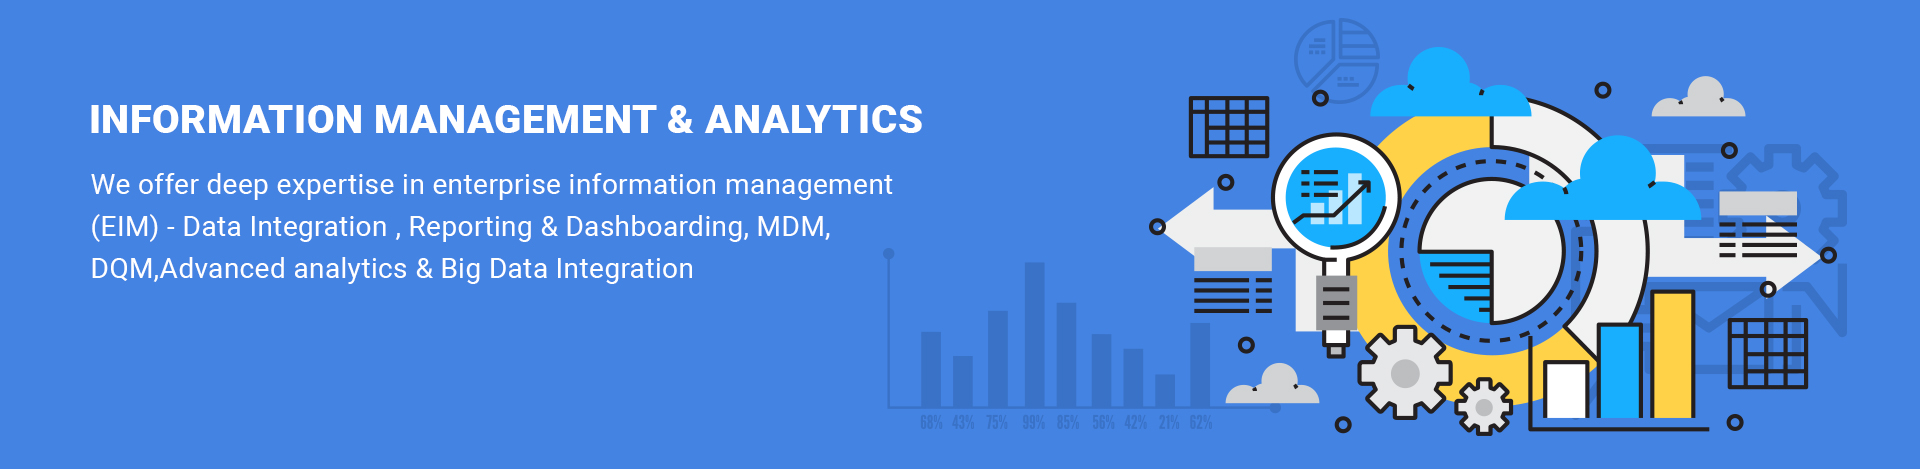 Information Management & Analytics